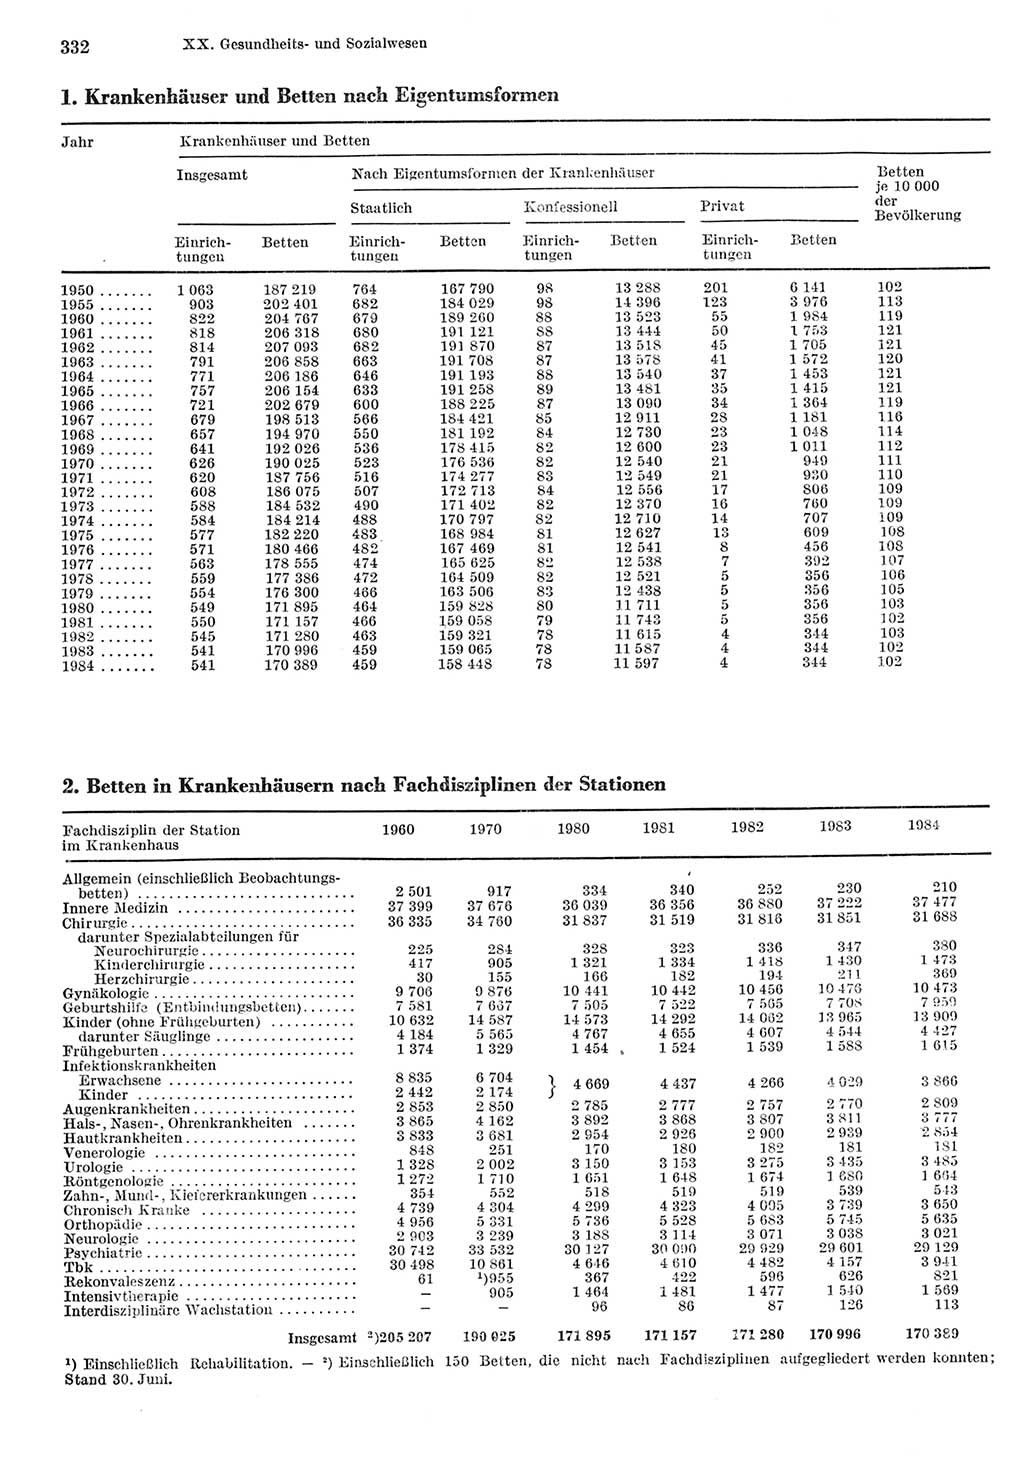 Statistisches Jahrbuch der Deutschen Demokratischen Republik (DDR) 1985, Seite 332 (Stat. Jb. DDR 1985, S. 332)